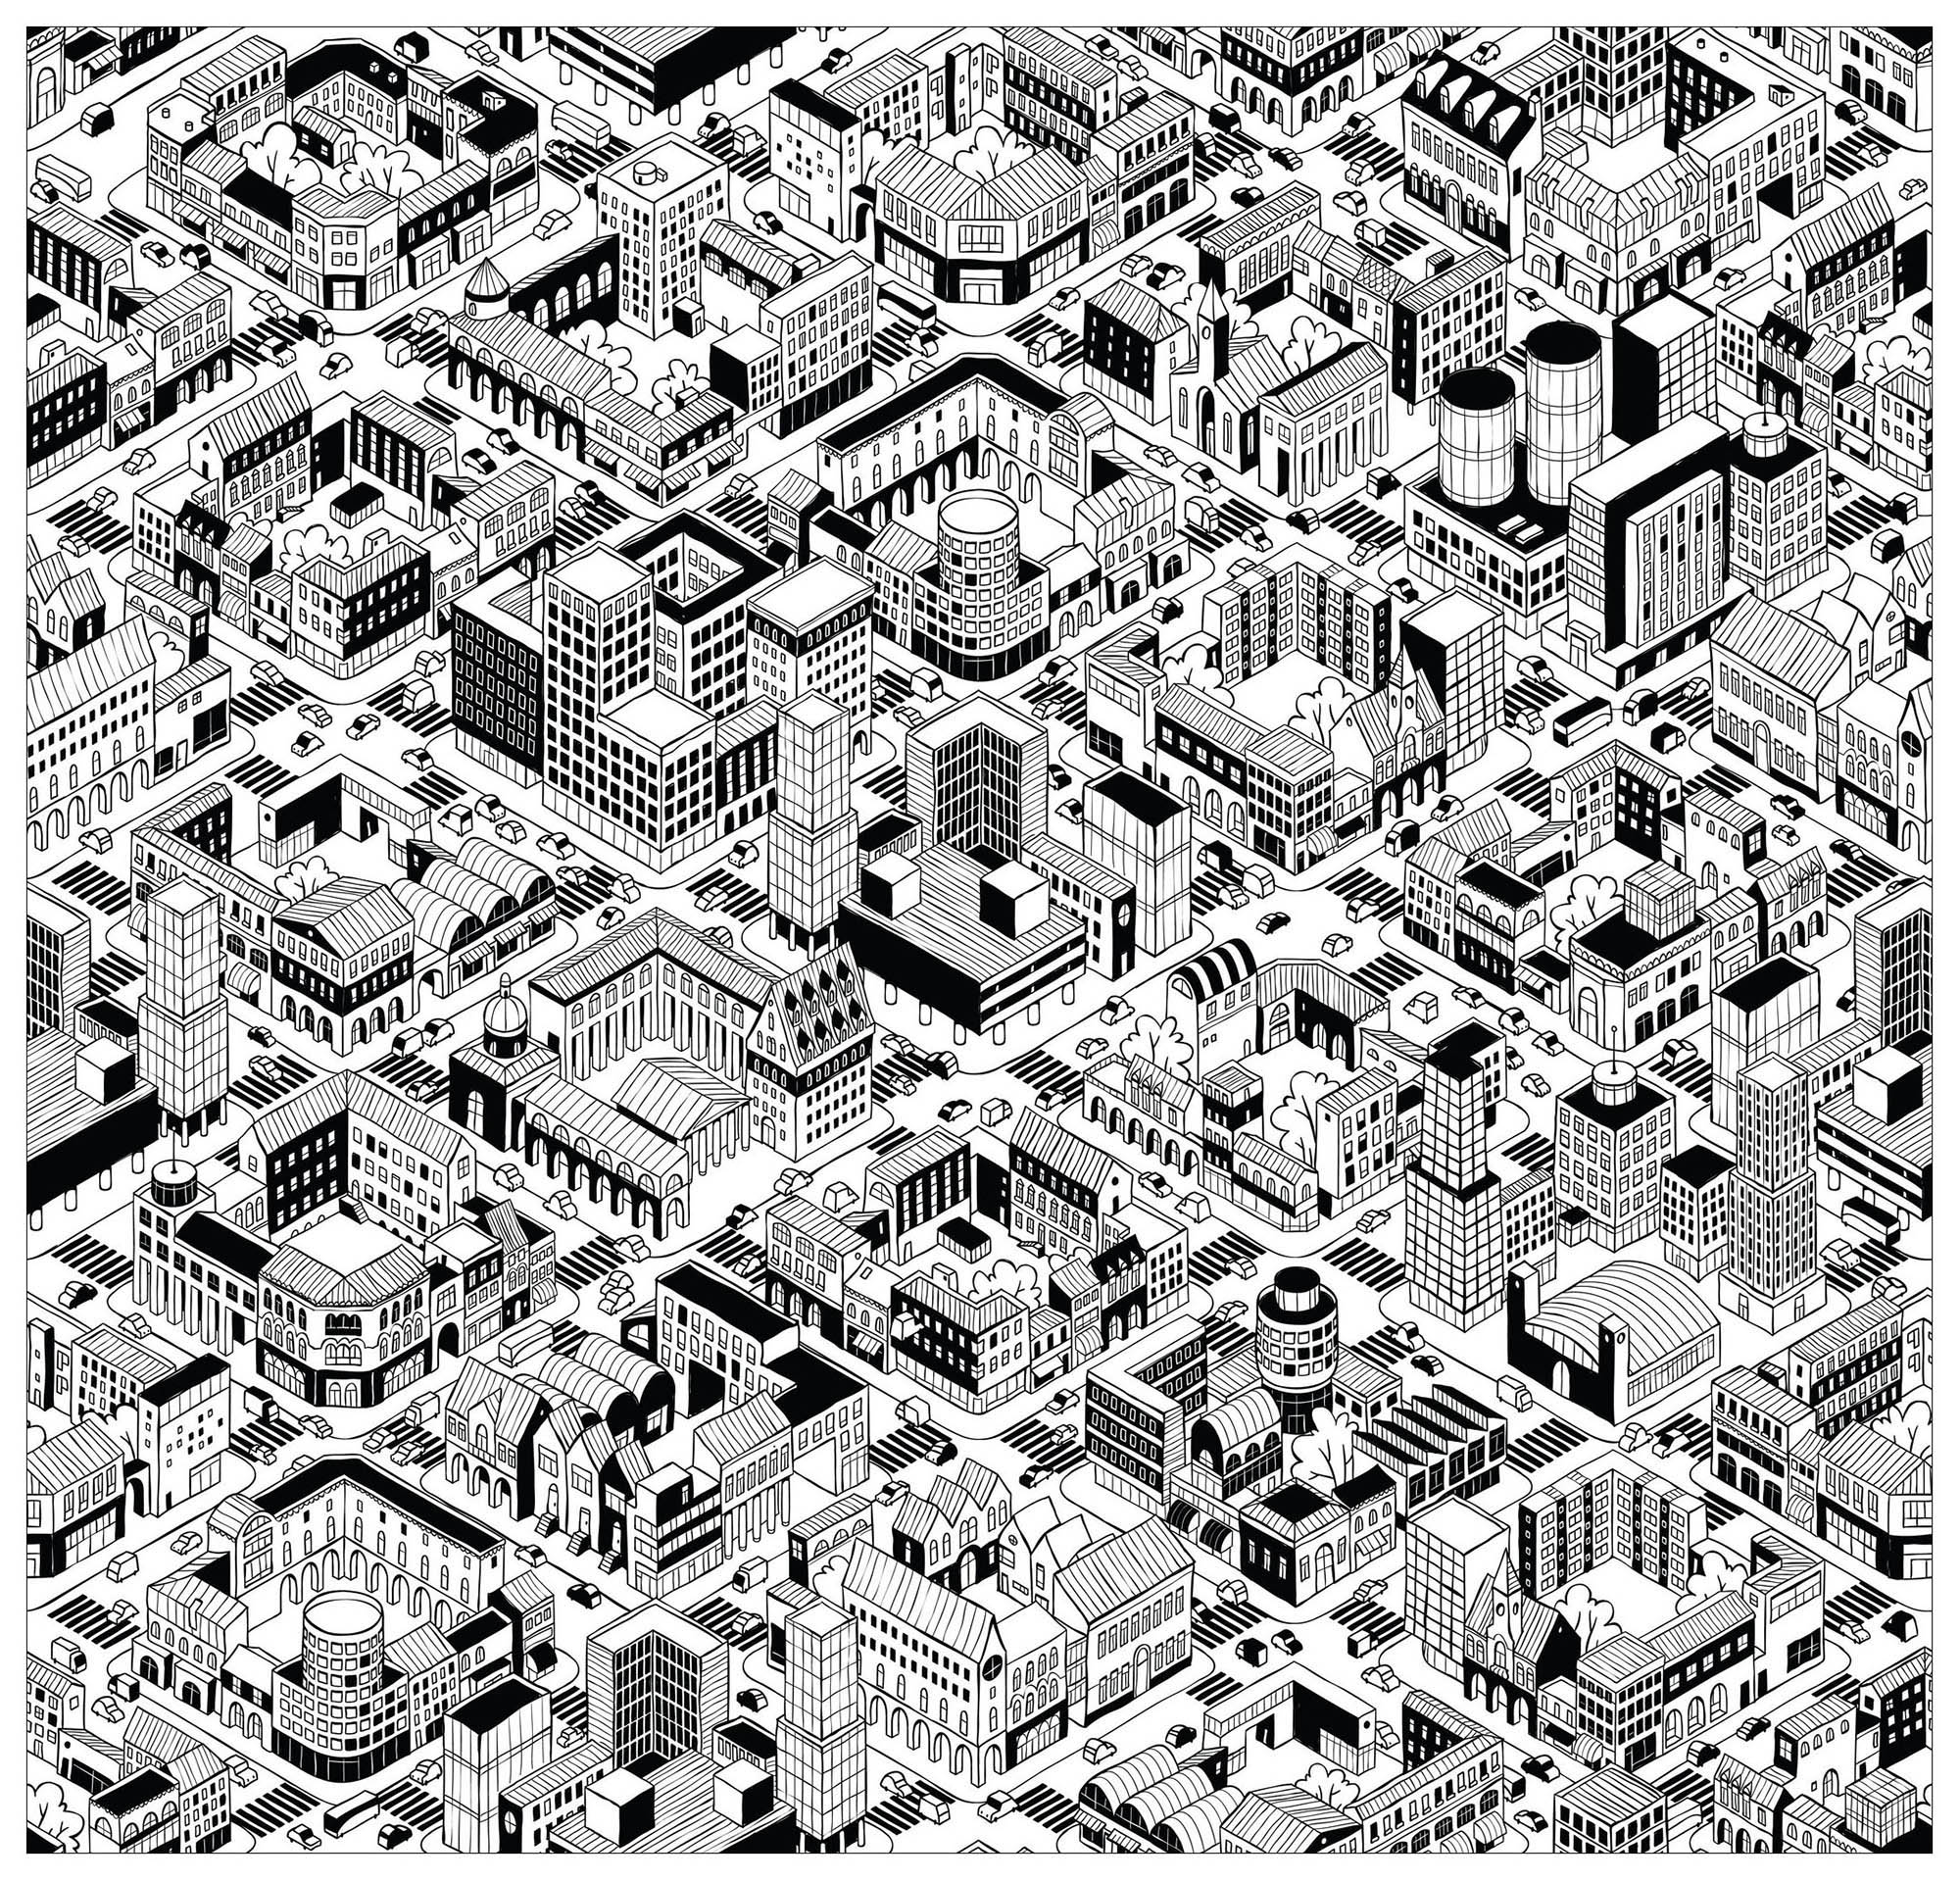 Male diese Stadt an, die wie aus dem Videospiel Sim City zu stammen scheint! Unglaubliche Gebäude: alle unterschiedlich und einzigartig, Quelle : 123rf   Künstler : Ivook